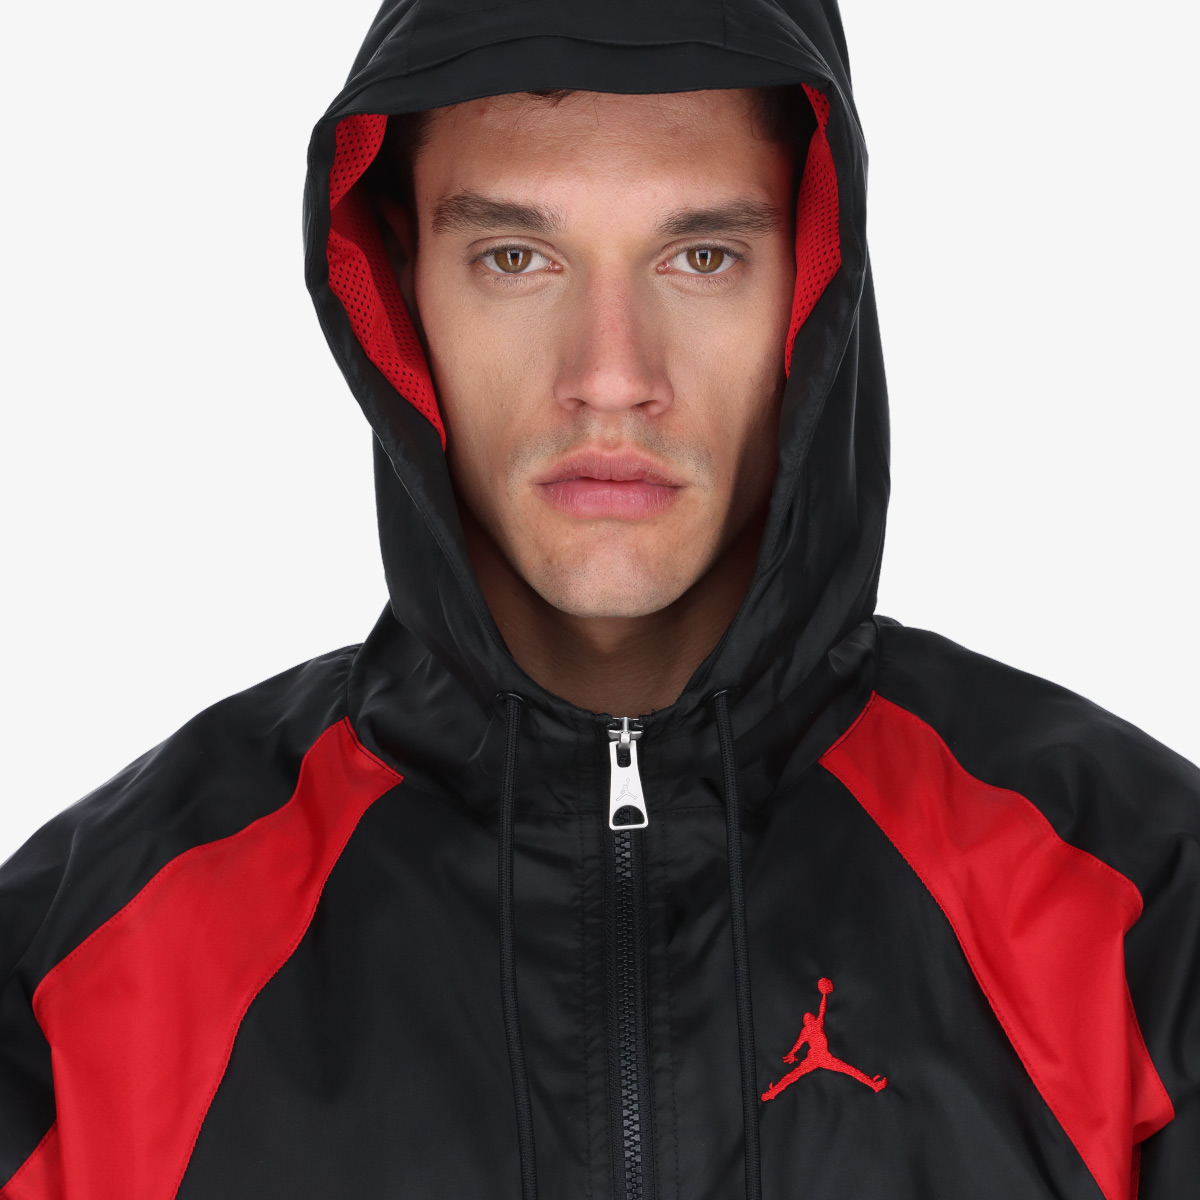 Nike Essential Woven Jacker 